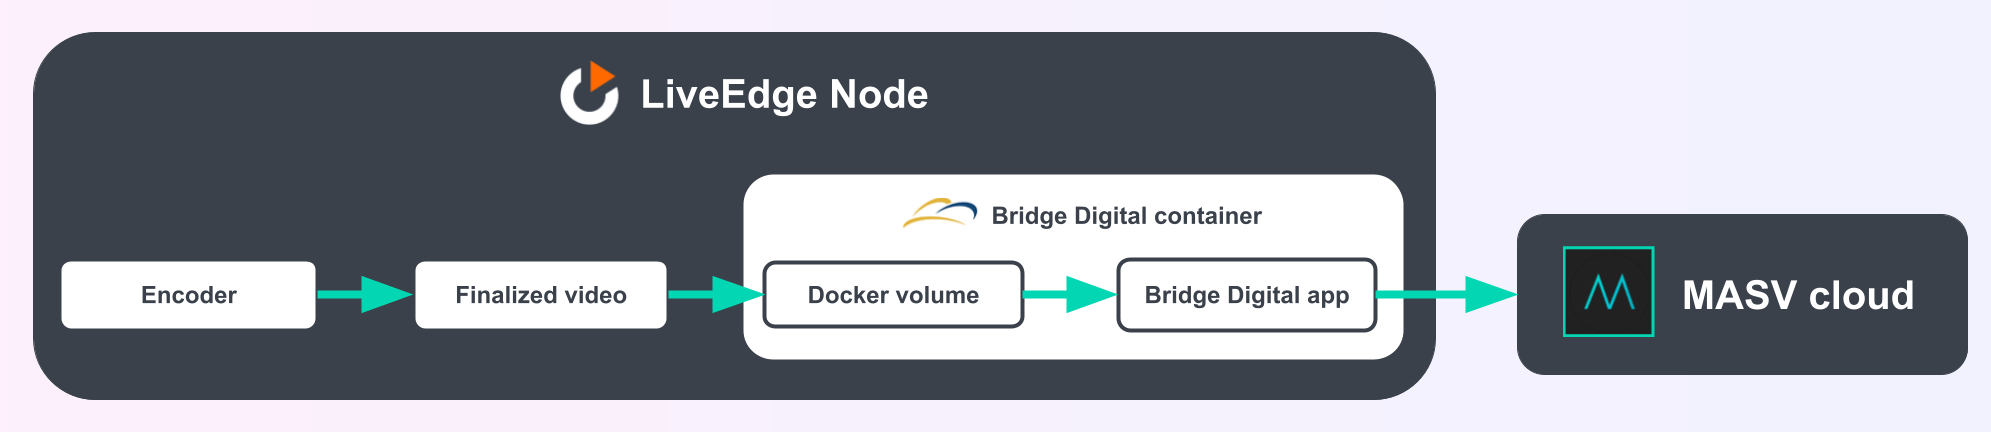 Schéma de l'architecture de l'application Bridge Digital